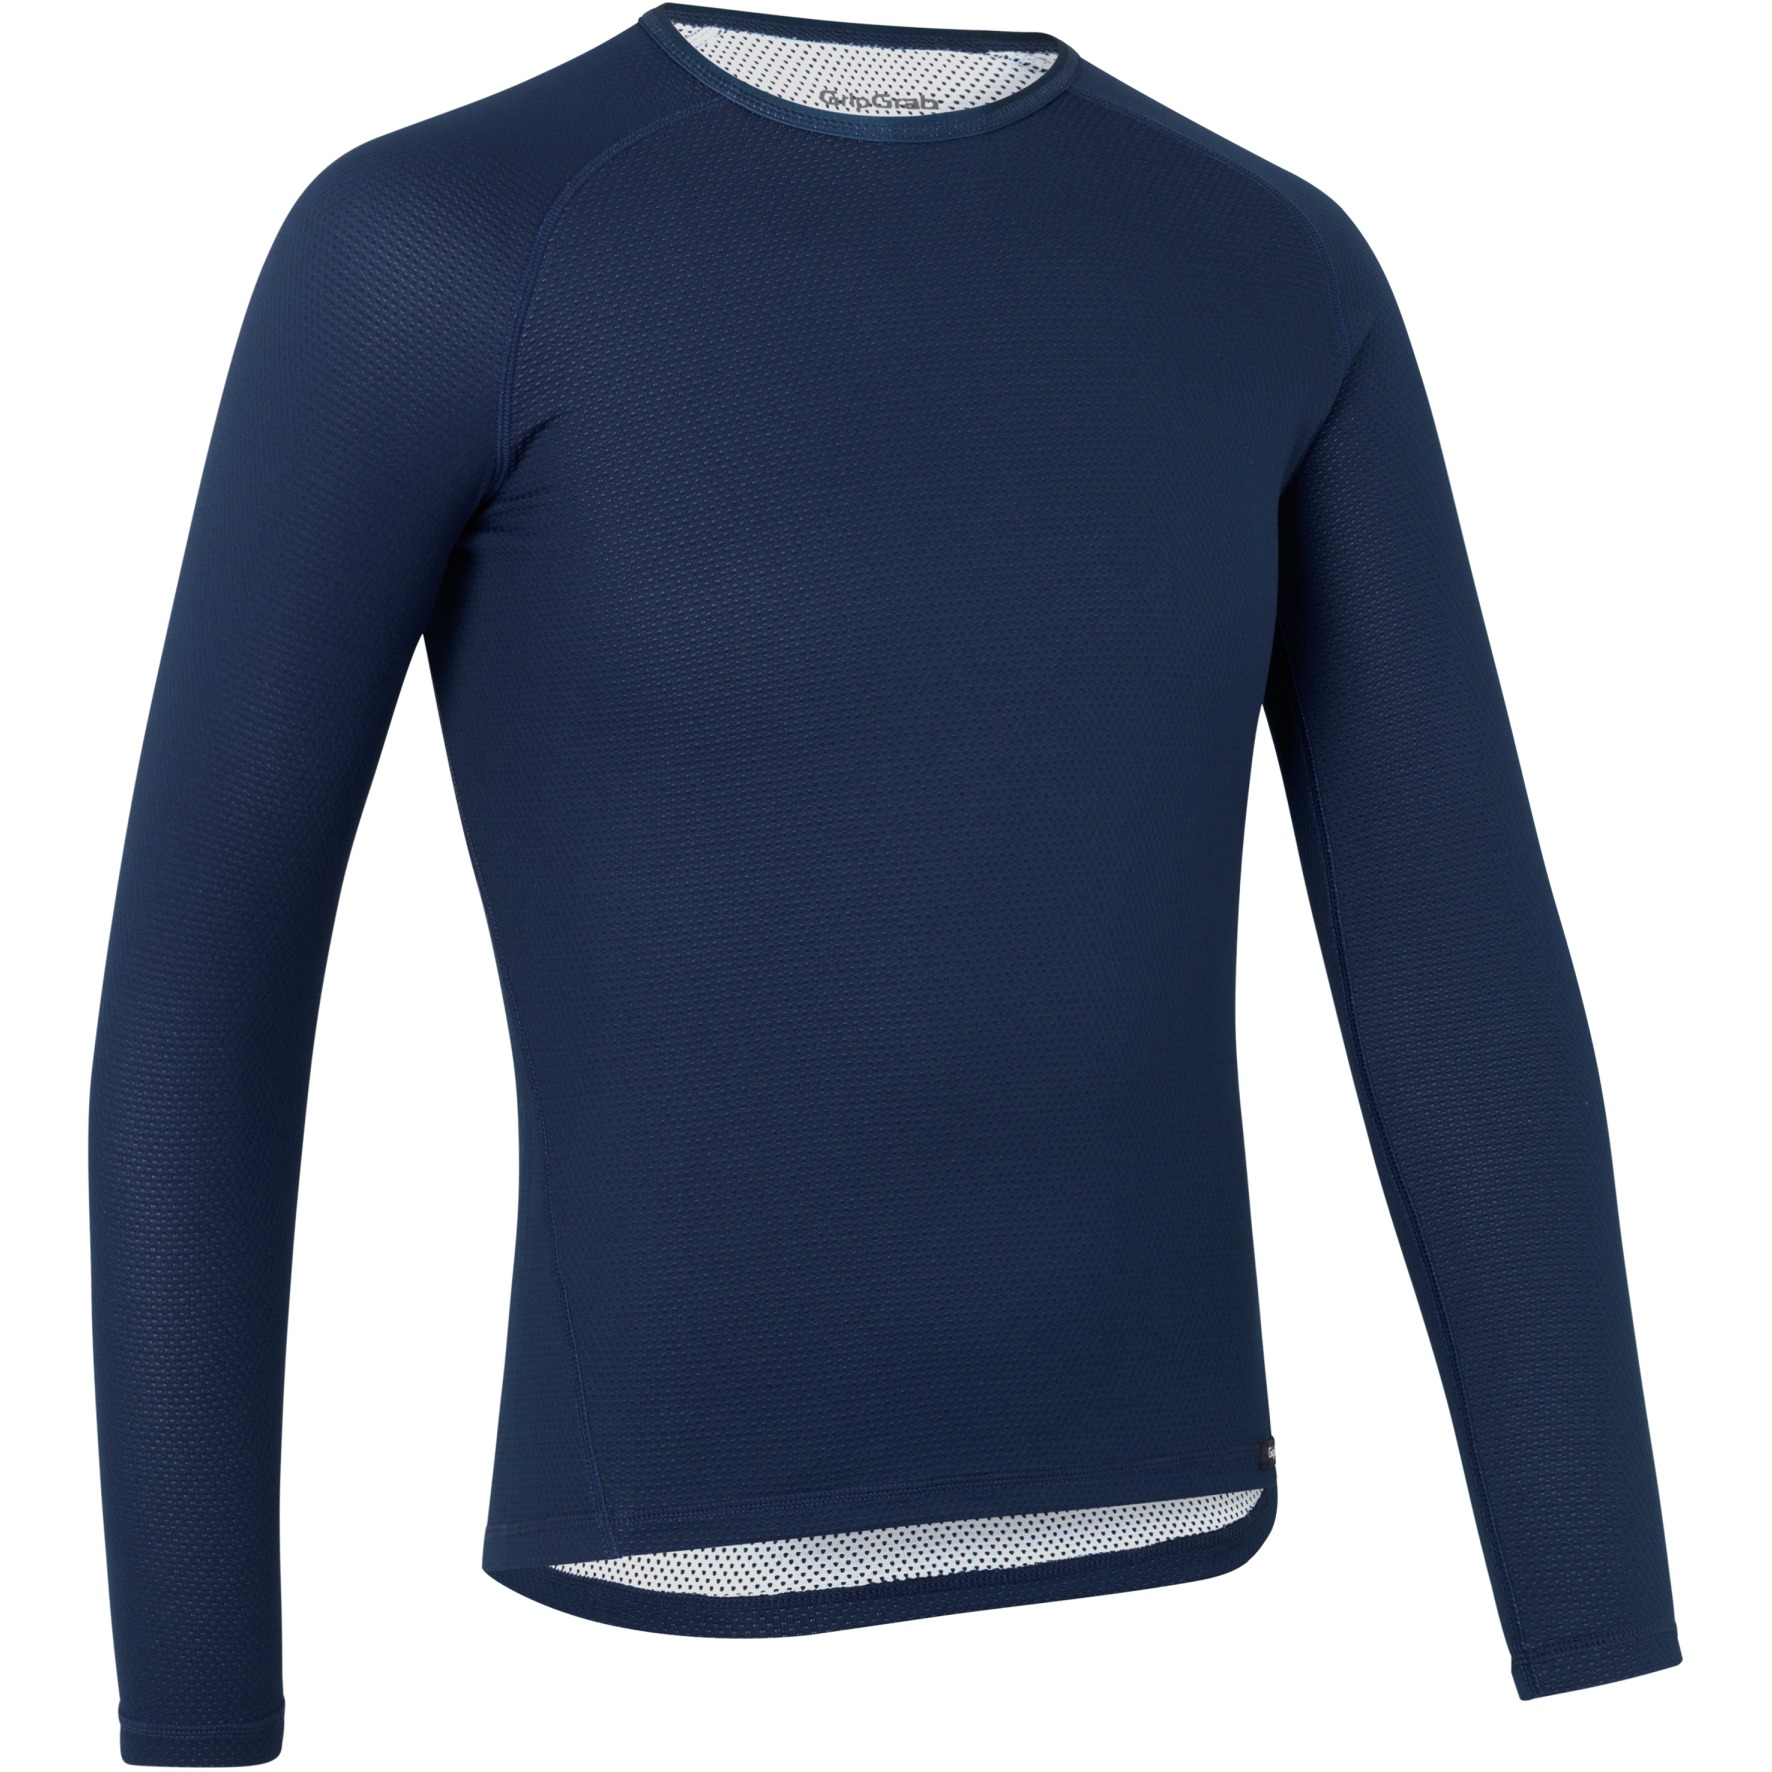 Produktbild von GripGrab Ride Thermal Langärmeliges Unterhemd - Navy Blue